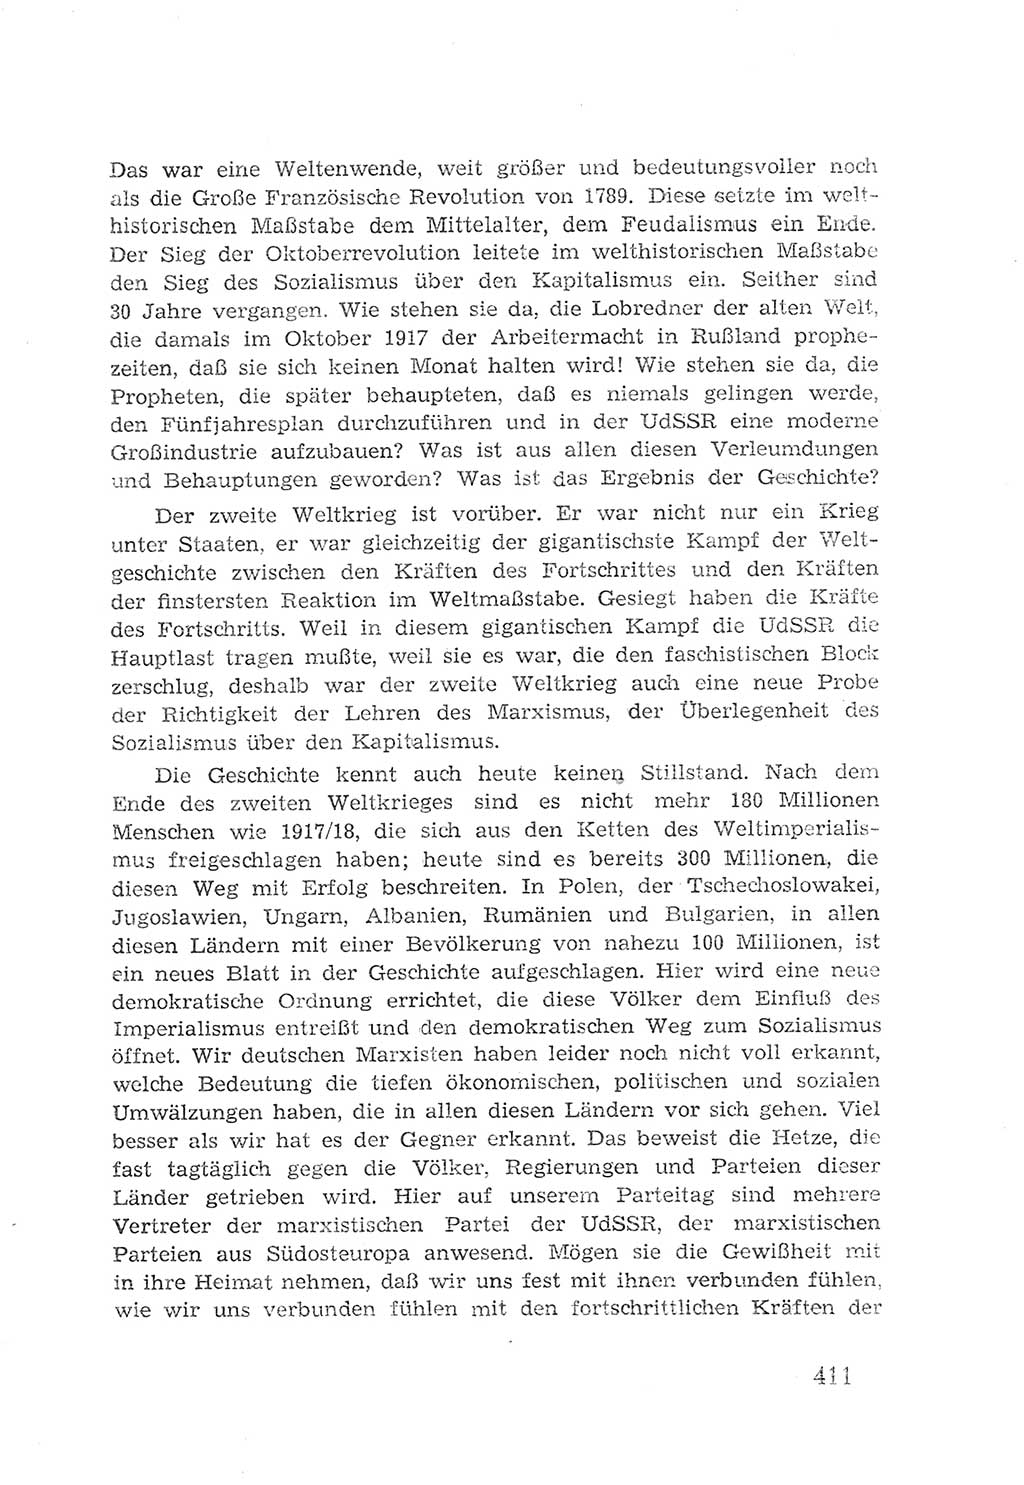 Protokoll der Verhandlungen des 2. Parteitages der Sozialistischen Einheitspartei Deutschlands (SED) [Sowjetische Besatzungszone (SBZ) Deutschlands] 1947, Seite 411 (Prot. Verh. 2. PT SED SBZ Dtl. 1947, S. 411)